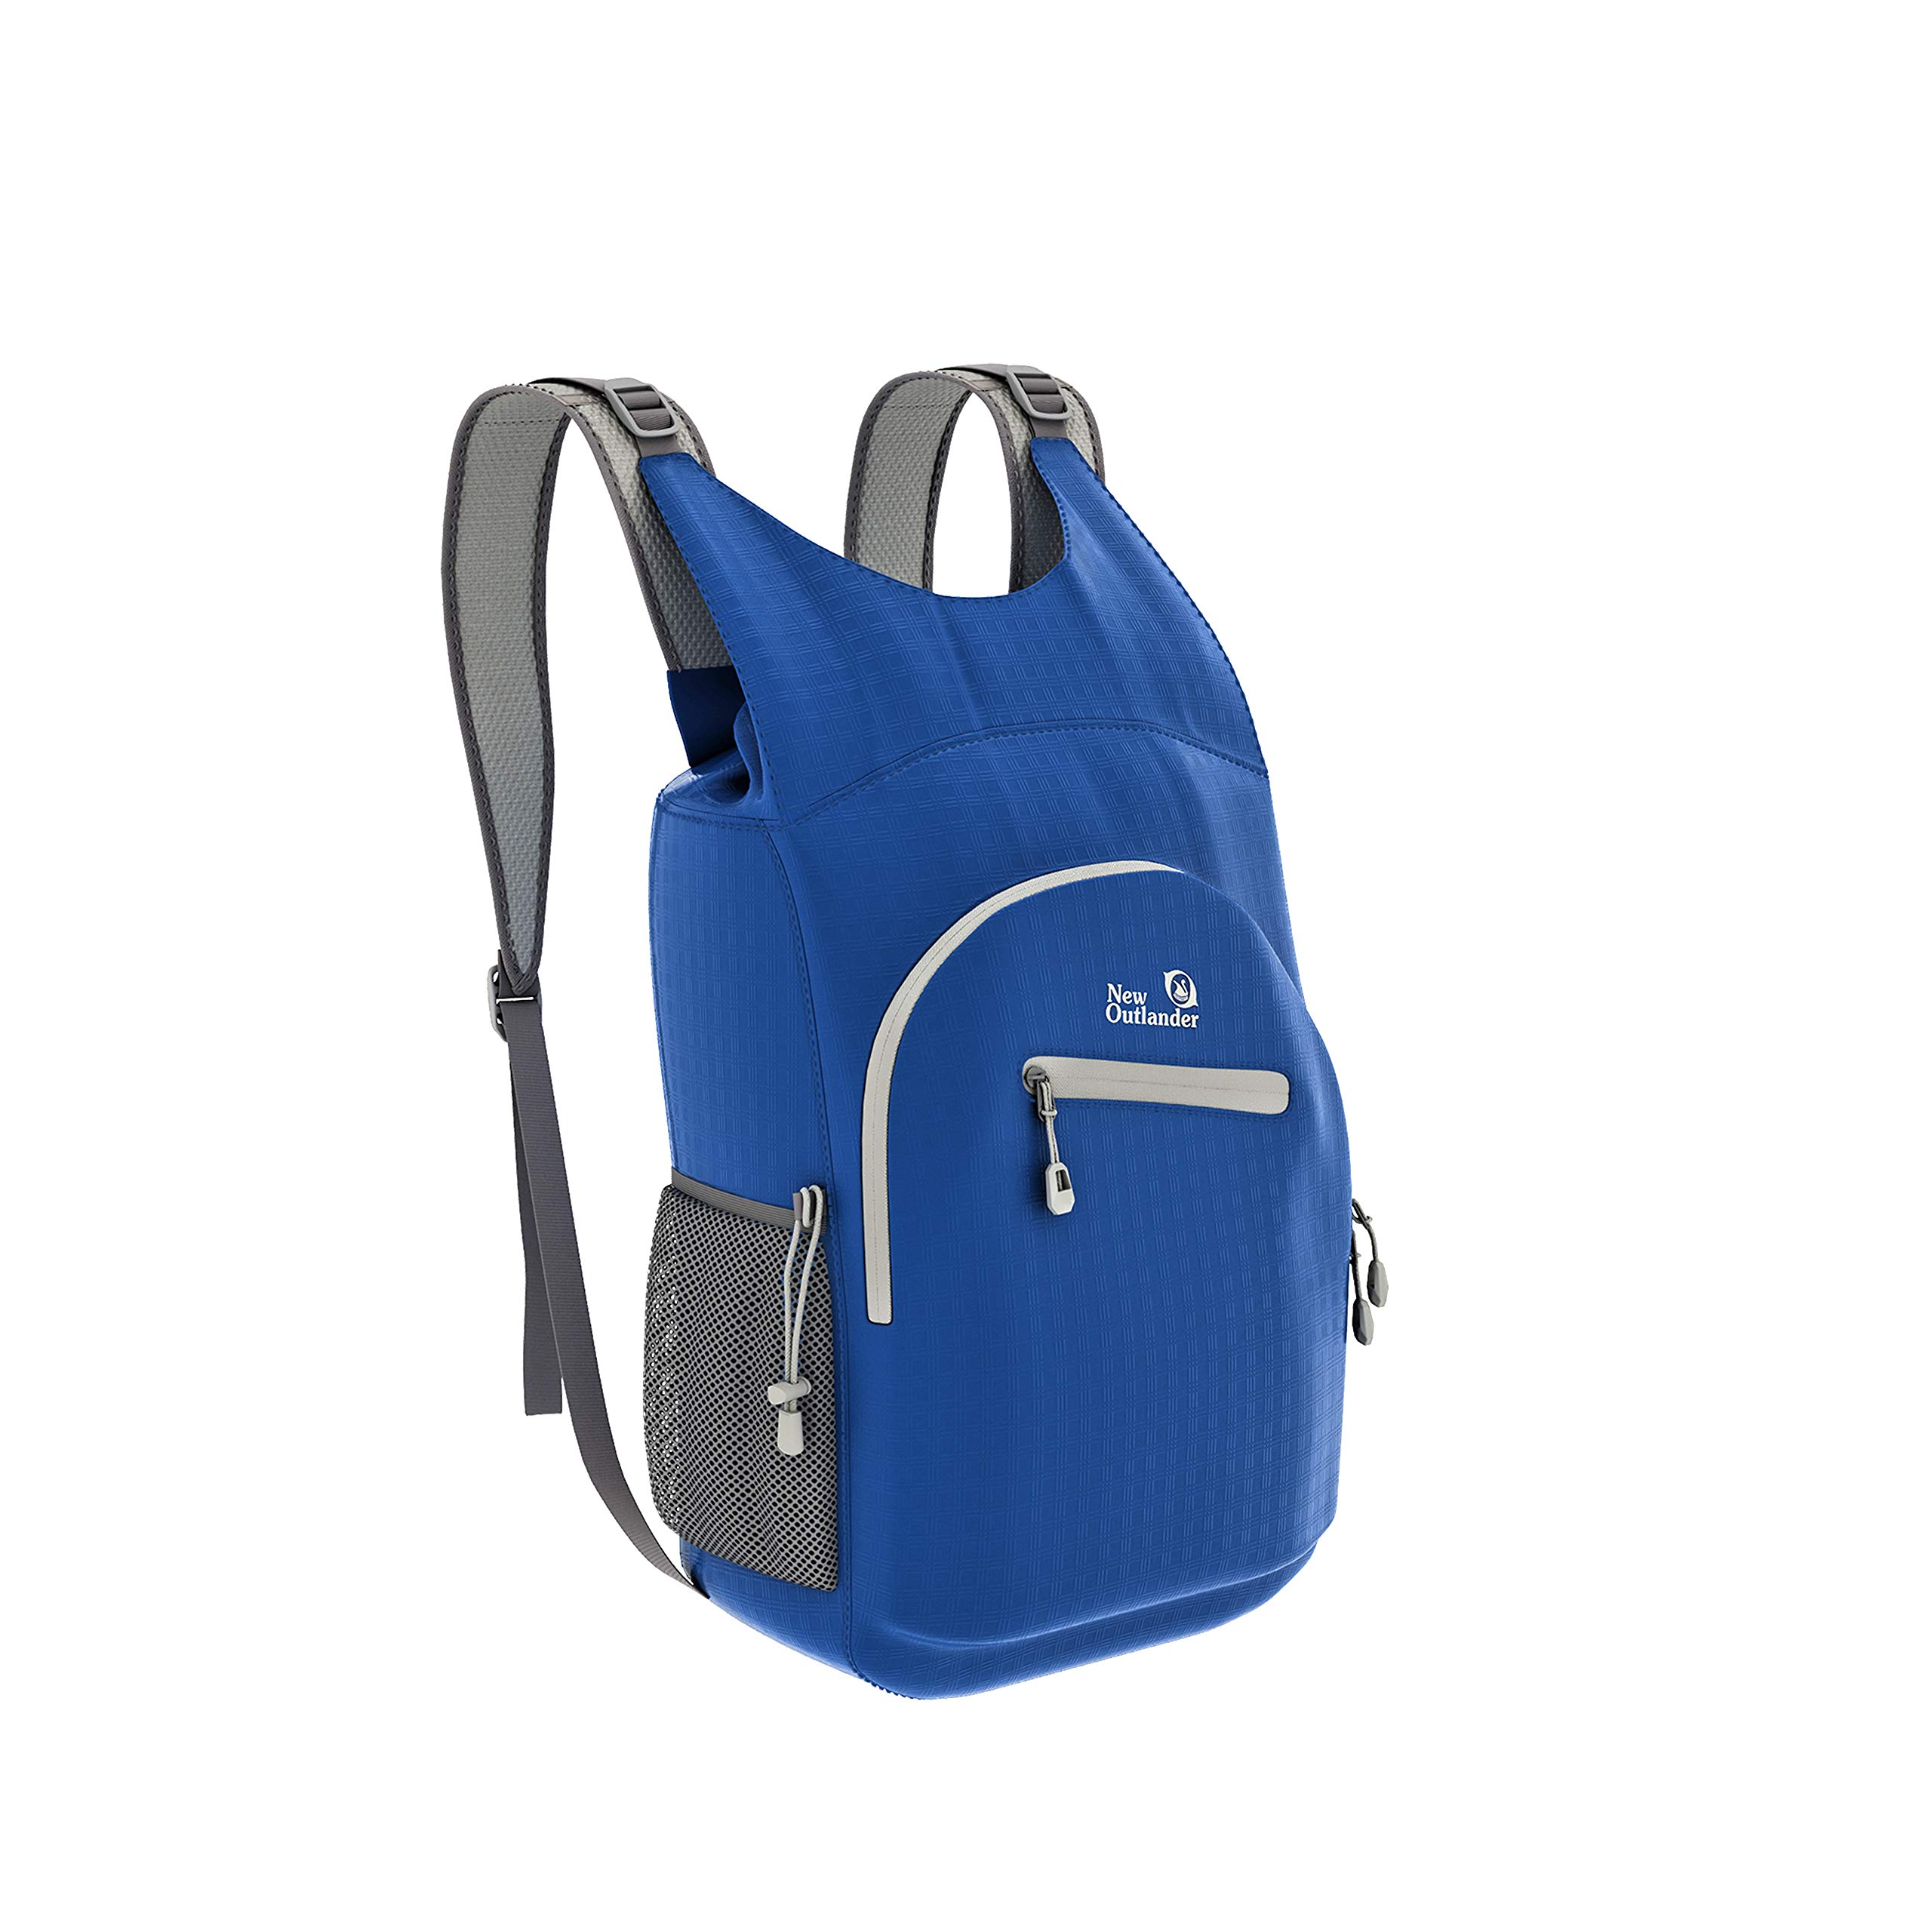 Outlander 100% Waterproof Hiking Backpack Lightweight Packable Travel Daypack(Dark Blue) 25L